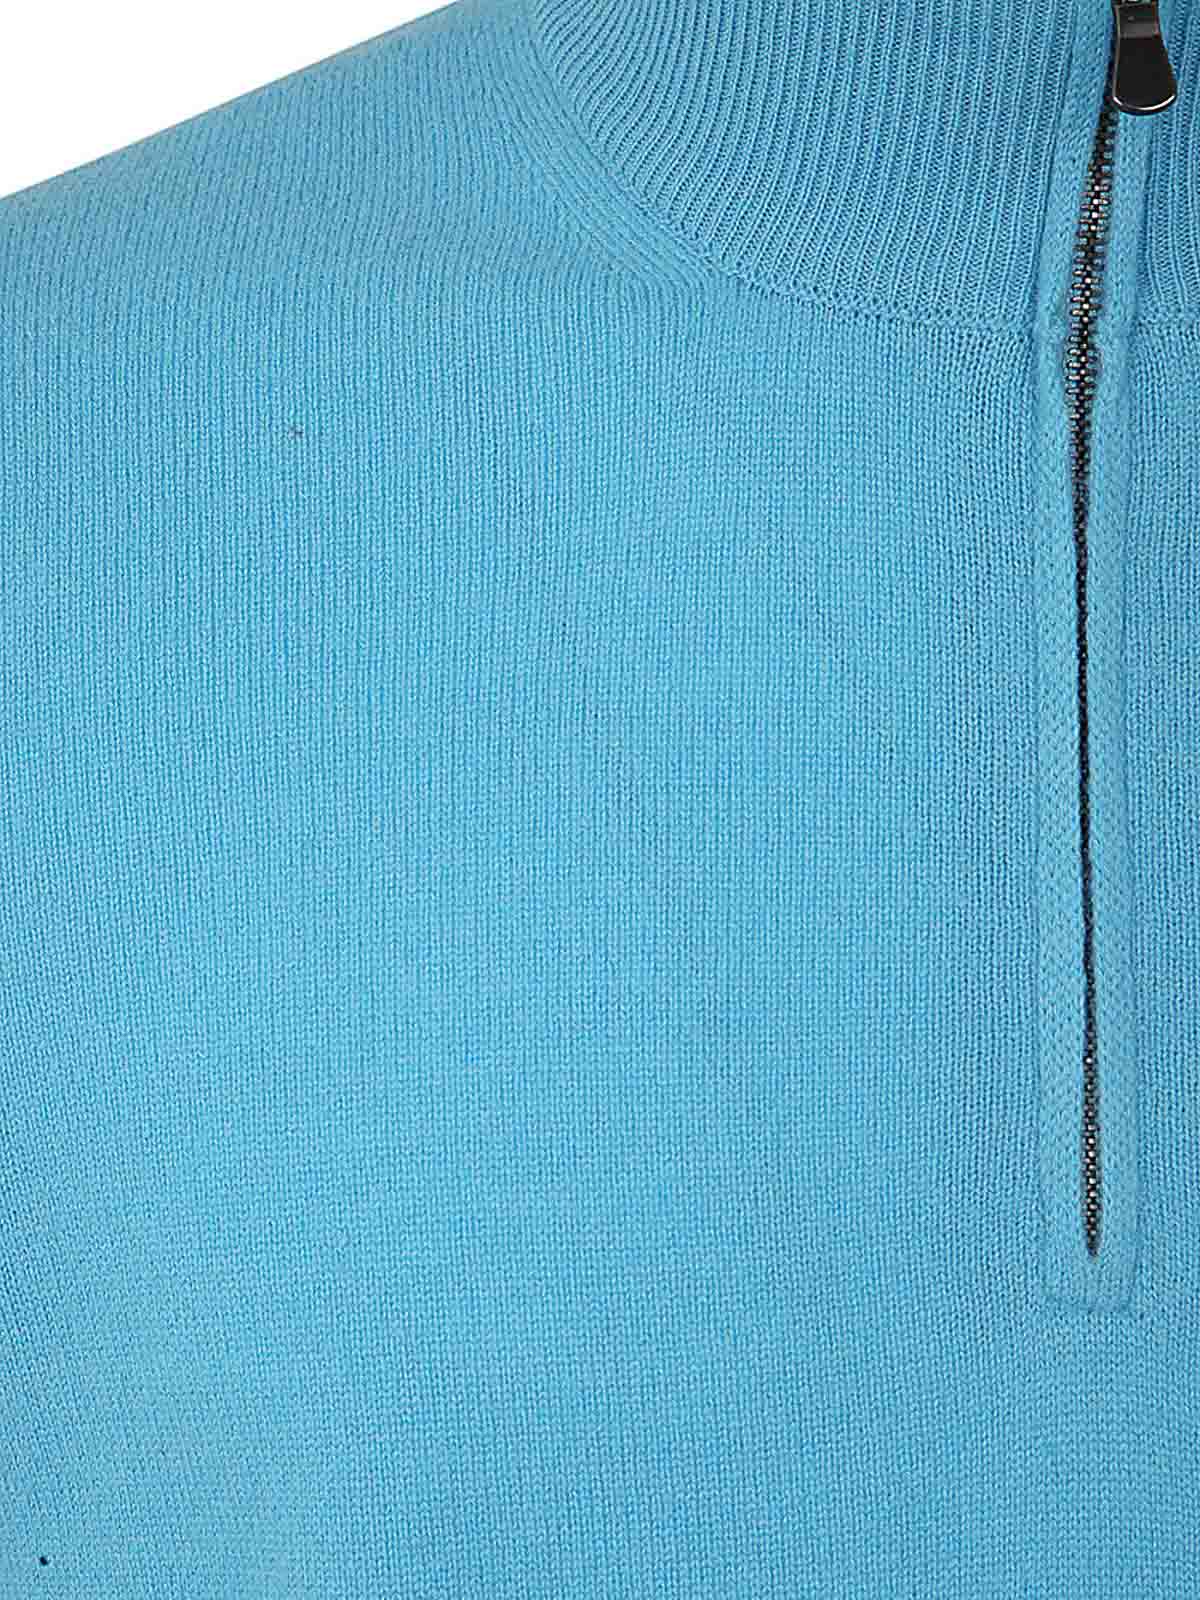 Shop Filippo De Laurentiis Half Zipped Sweater Wool Cashmere In Blue